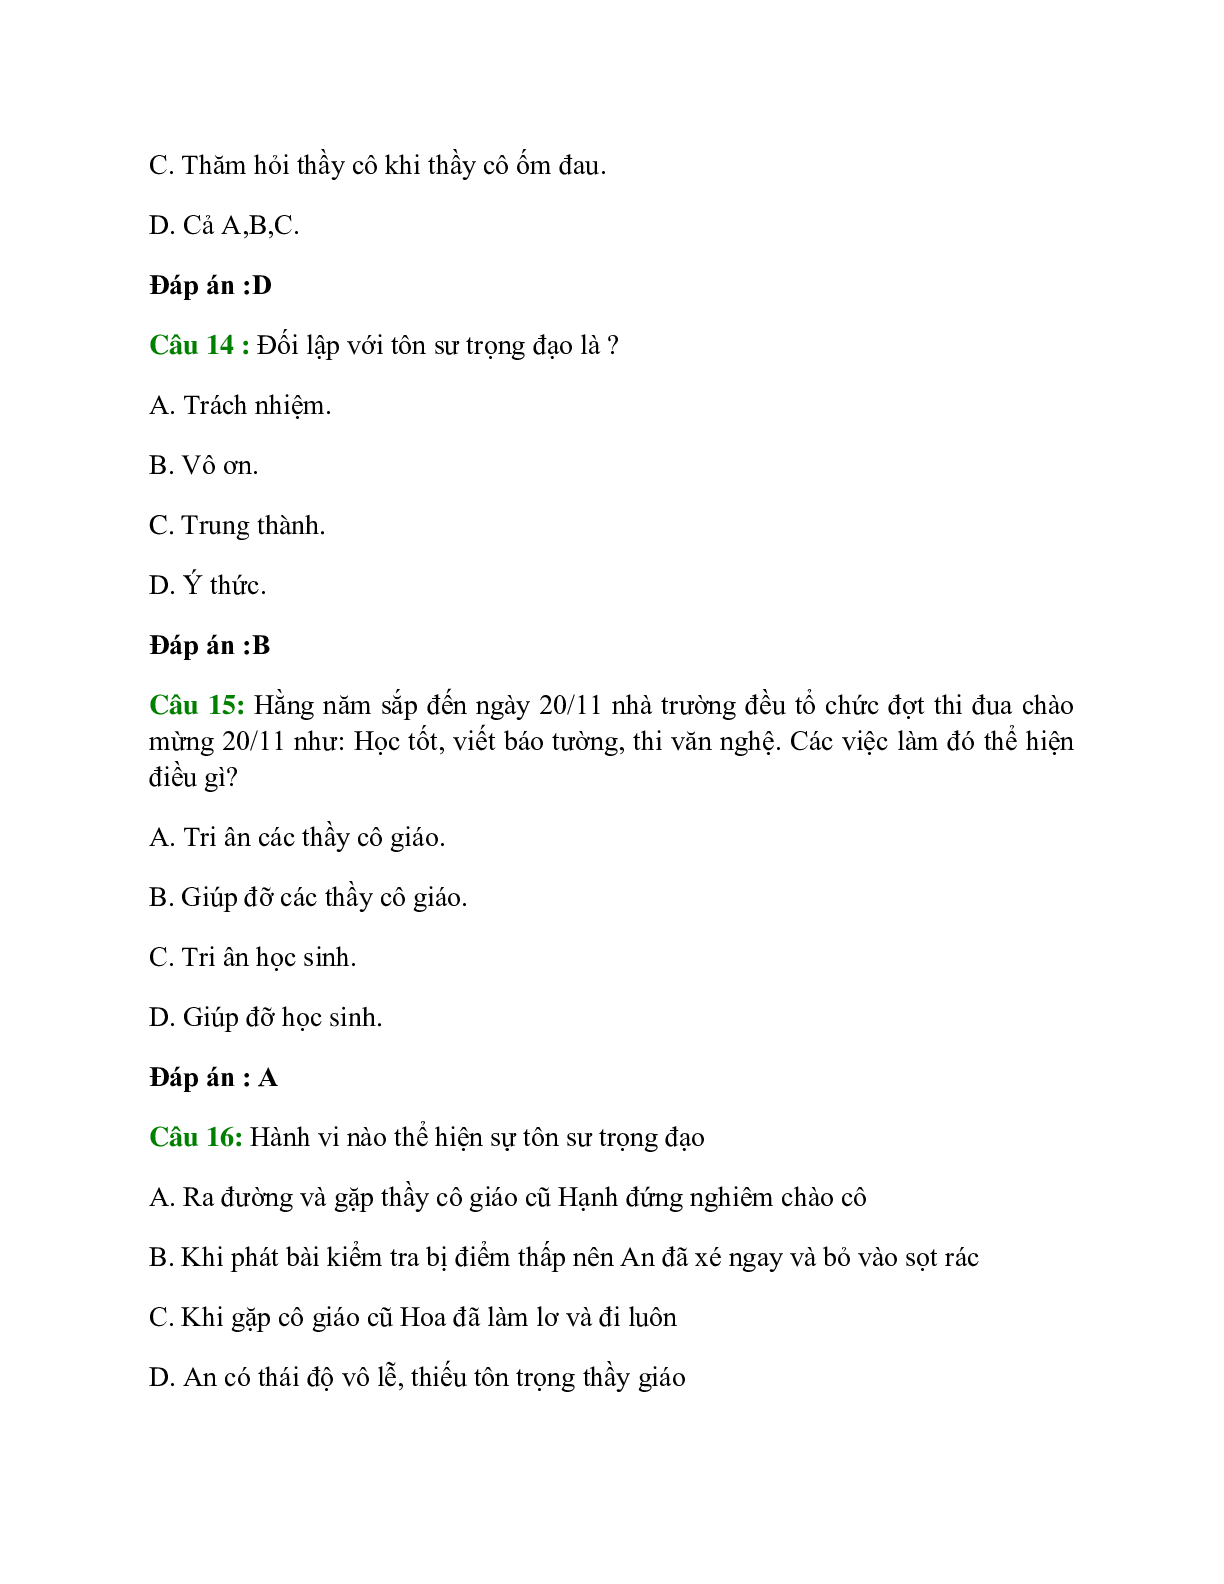 Trắc nghiệm GDCD 7 Bài 6 có đáp án: Tôn sư trọng đạo (trang 5)